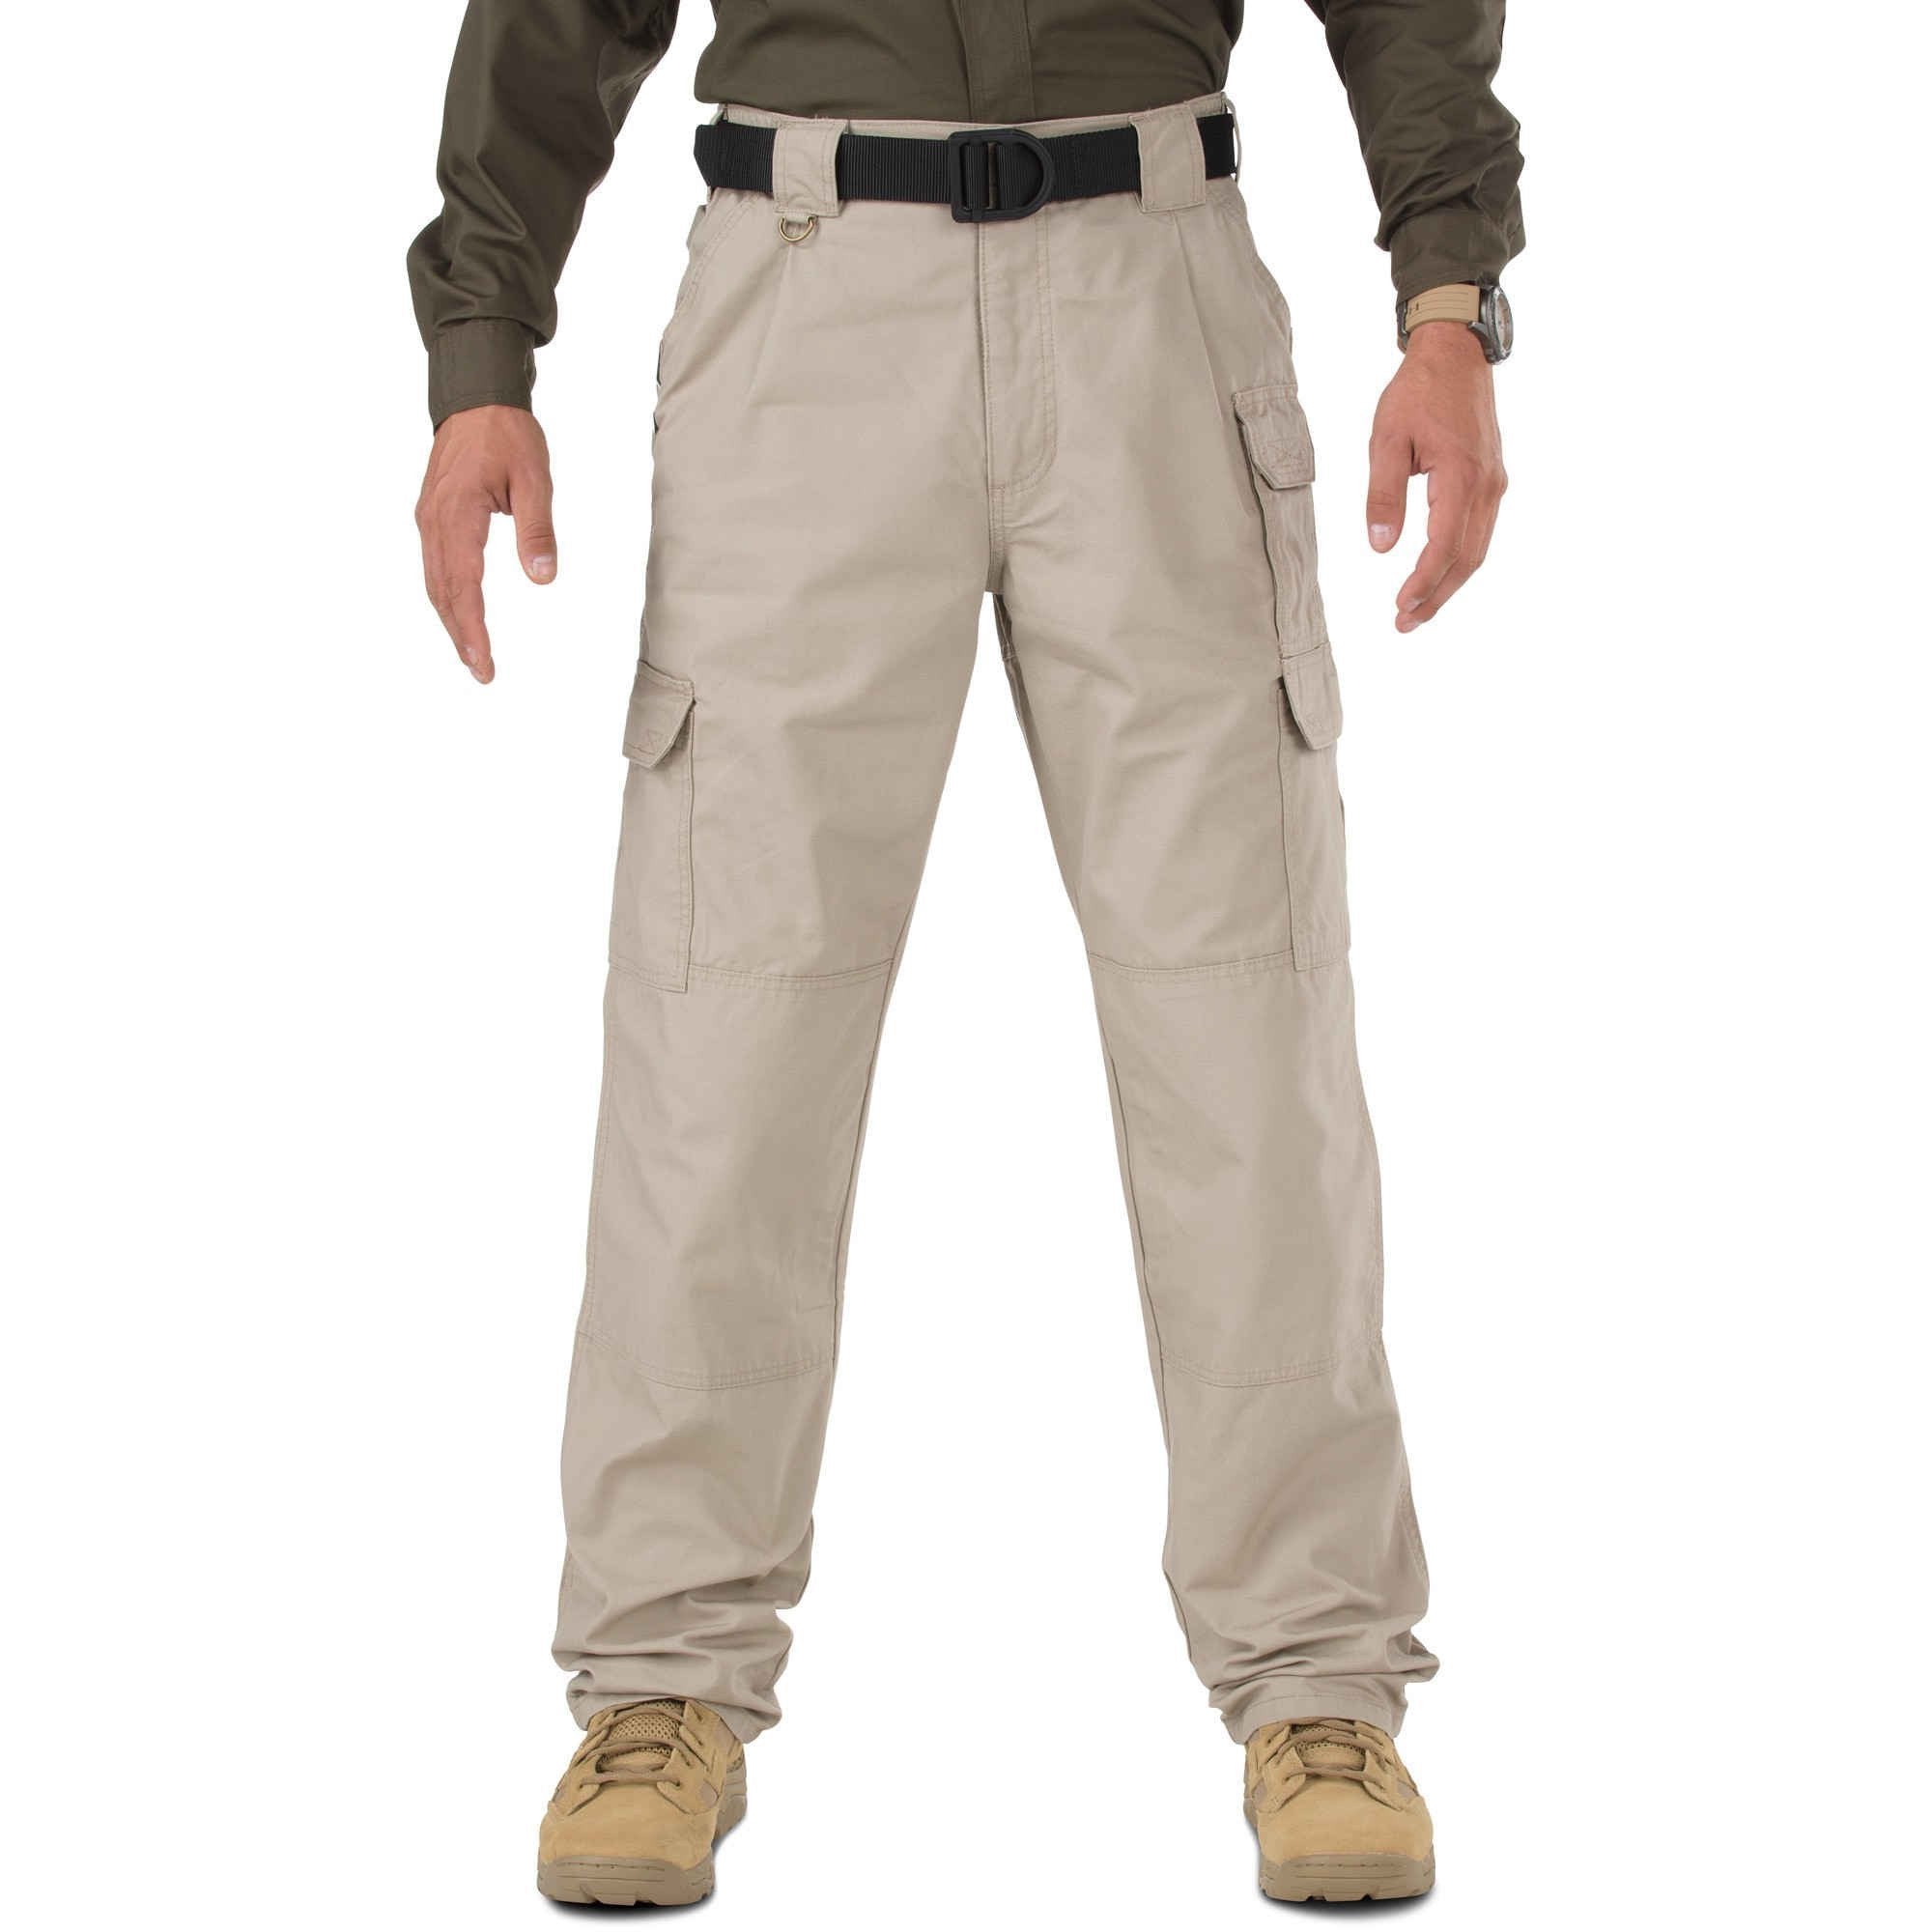 5.11 Tactical Pants - Khaki Pants 5.11 Tactical 28 30 Tactical Gear Supplier Tactical Distributors Australia